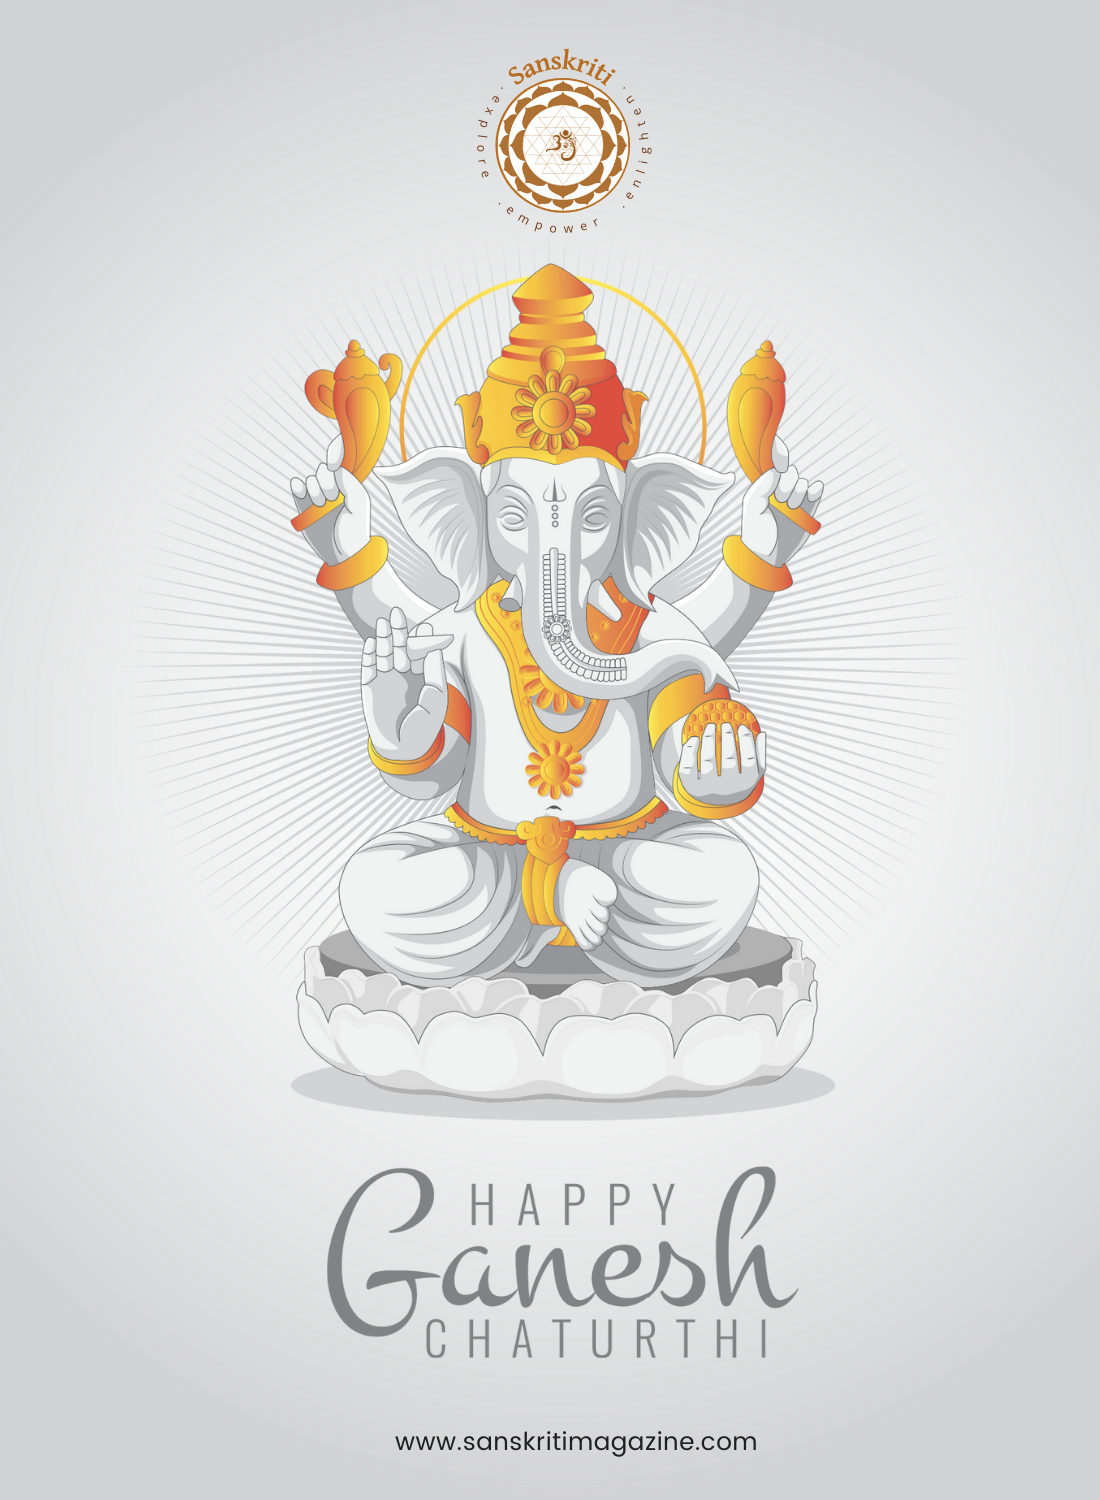 Ganesh Chaturthi Bytesize  Sanskriti - Hinduism and Indian